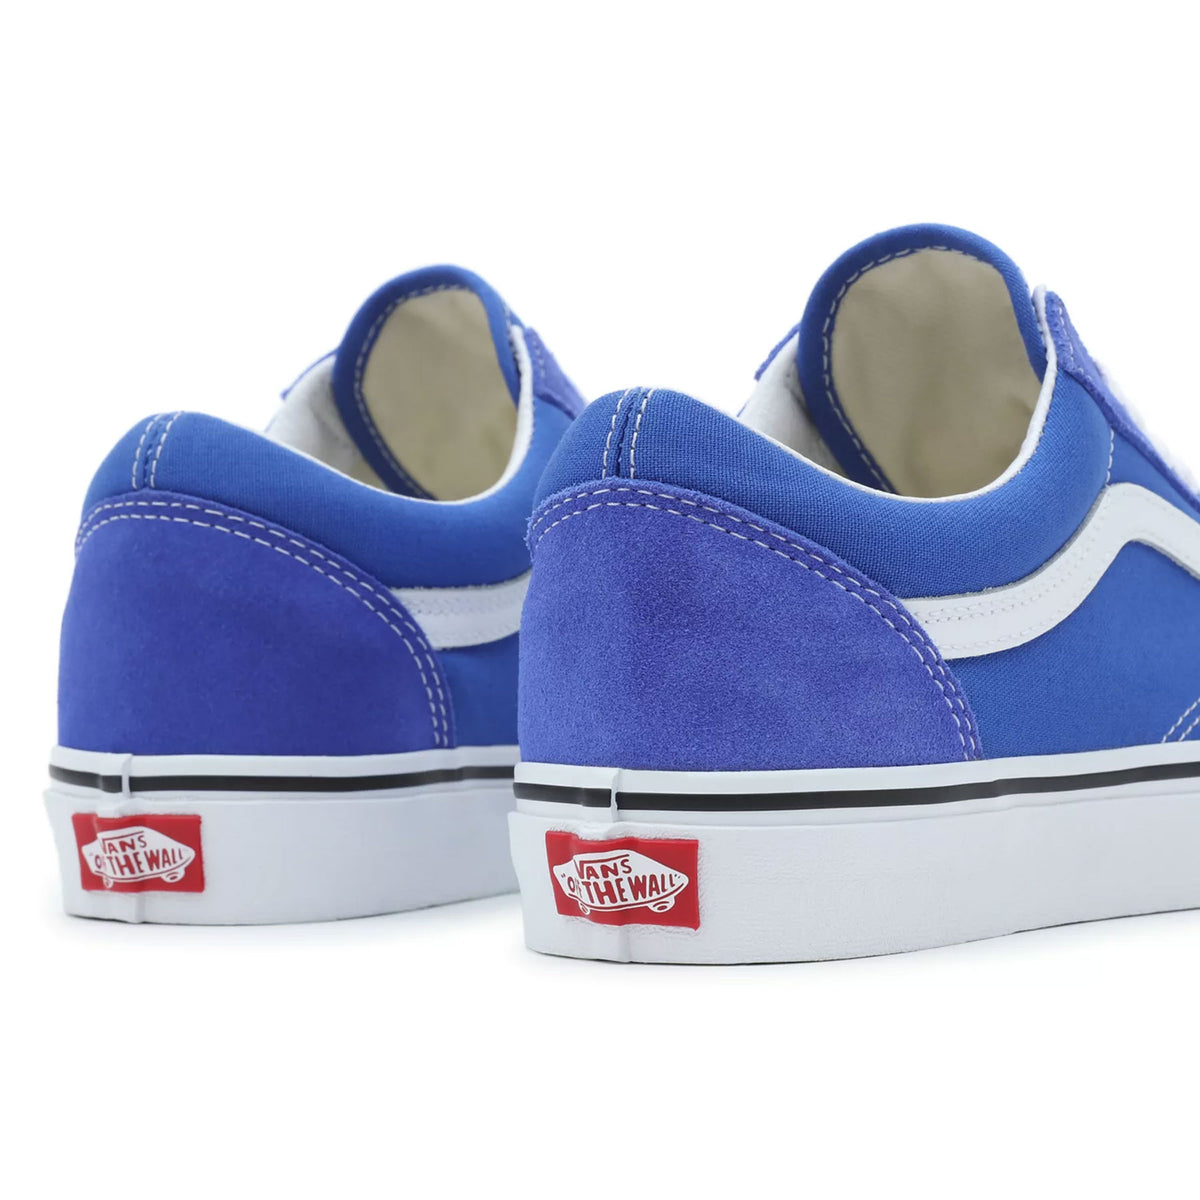 Vans Old Skool Shoe - Dazzling Blue Shoes